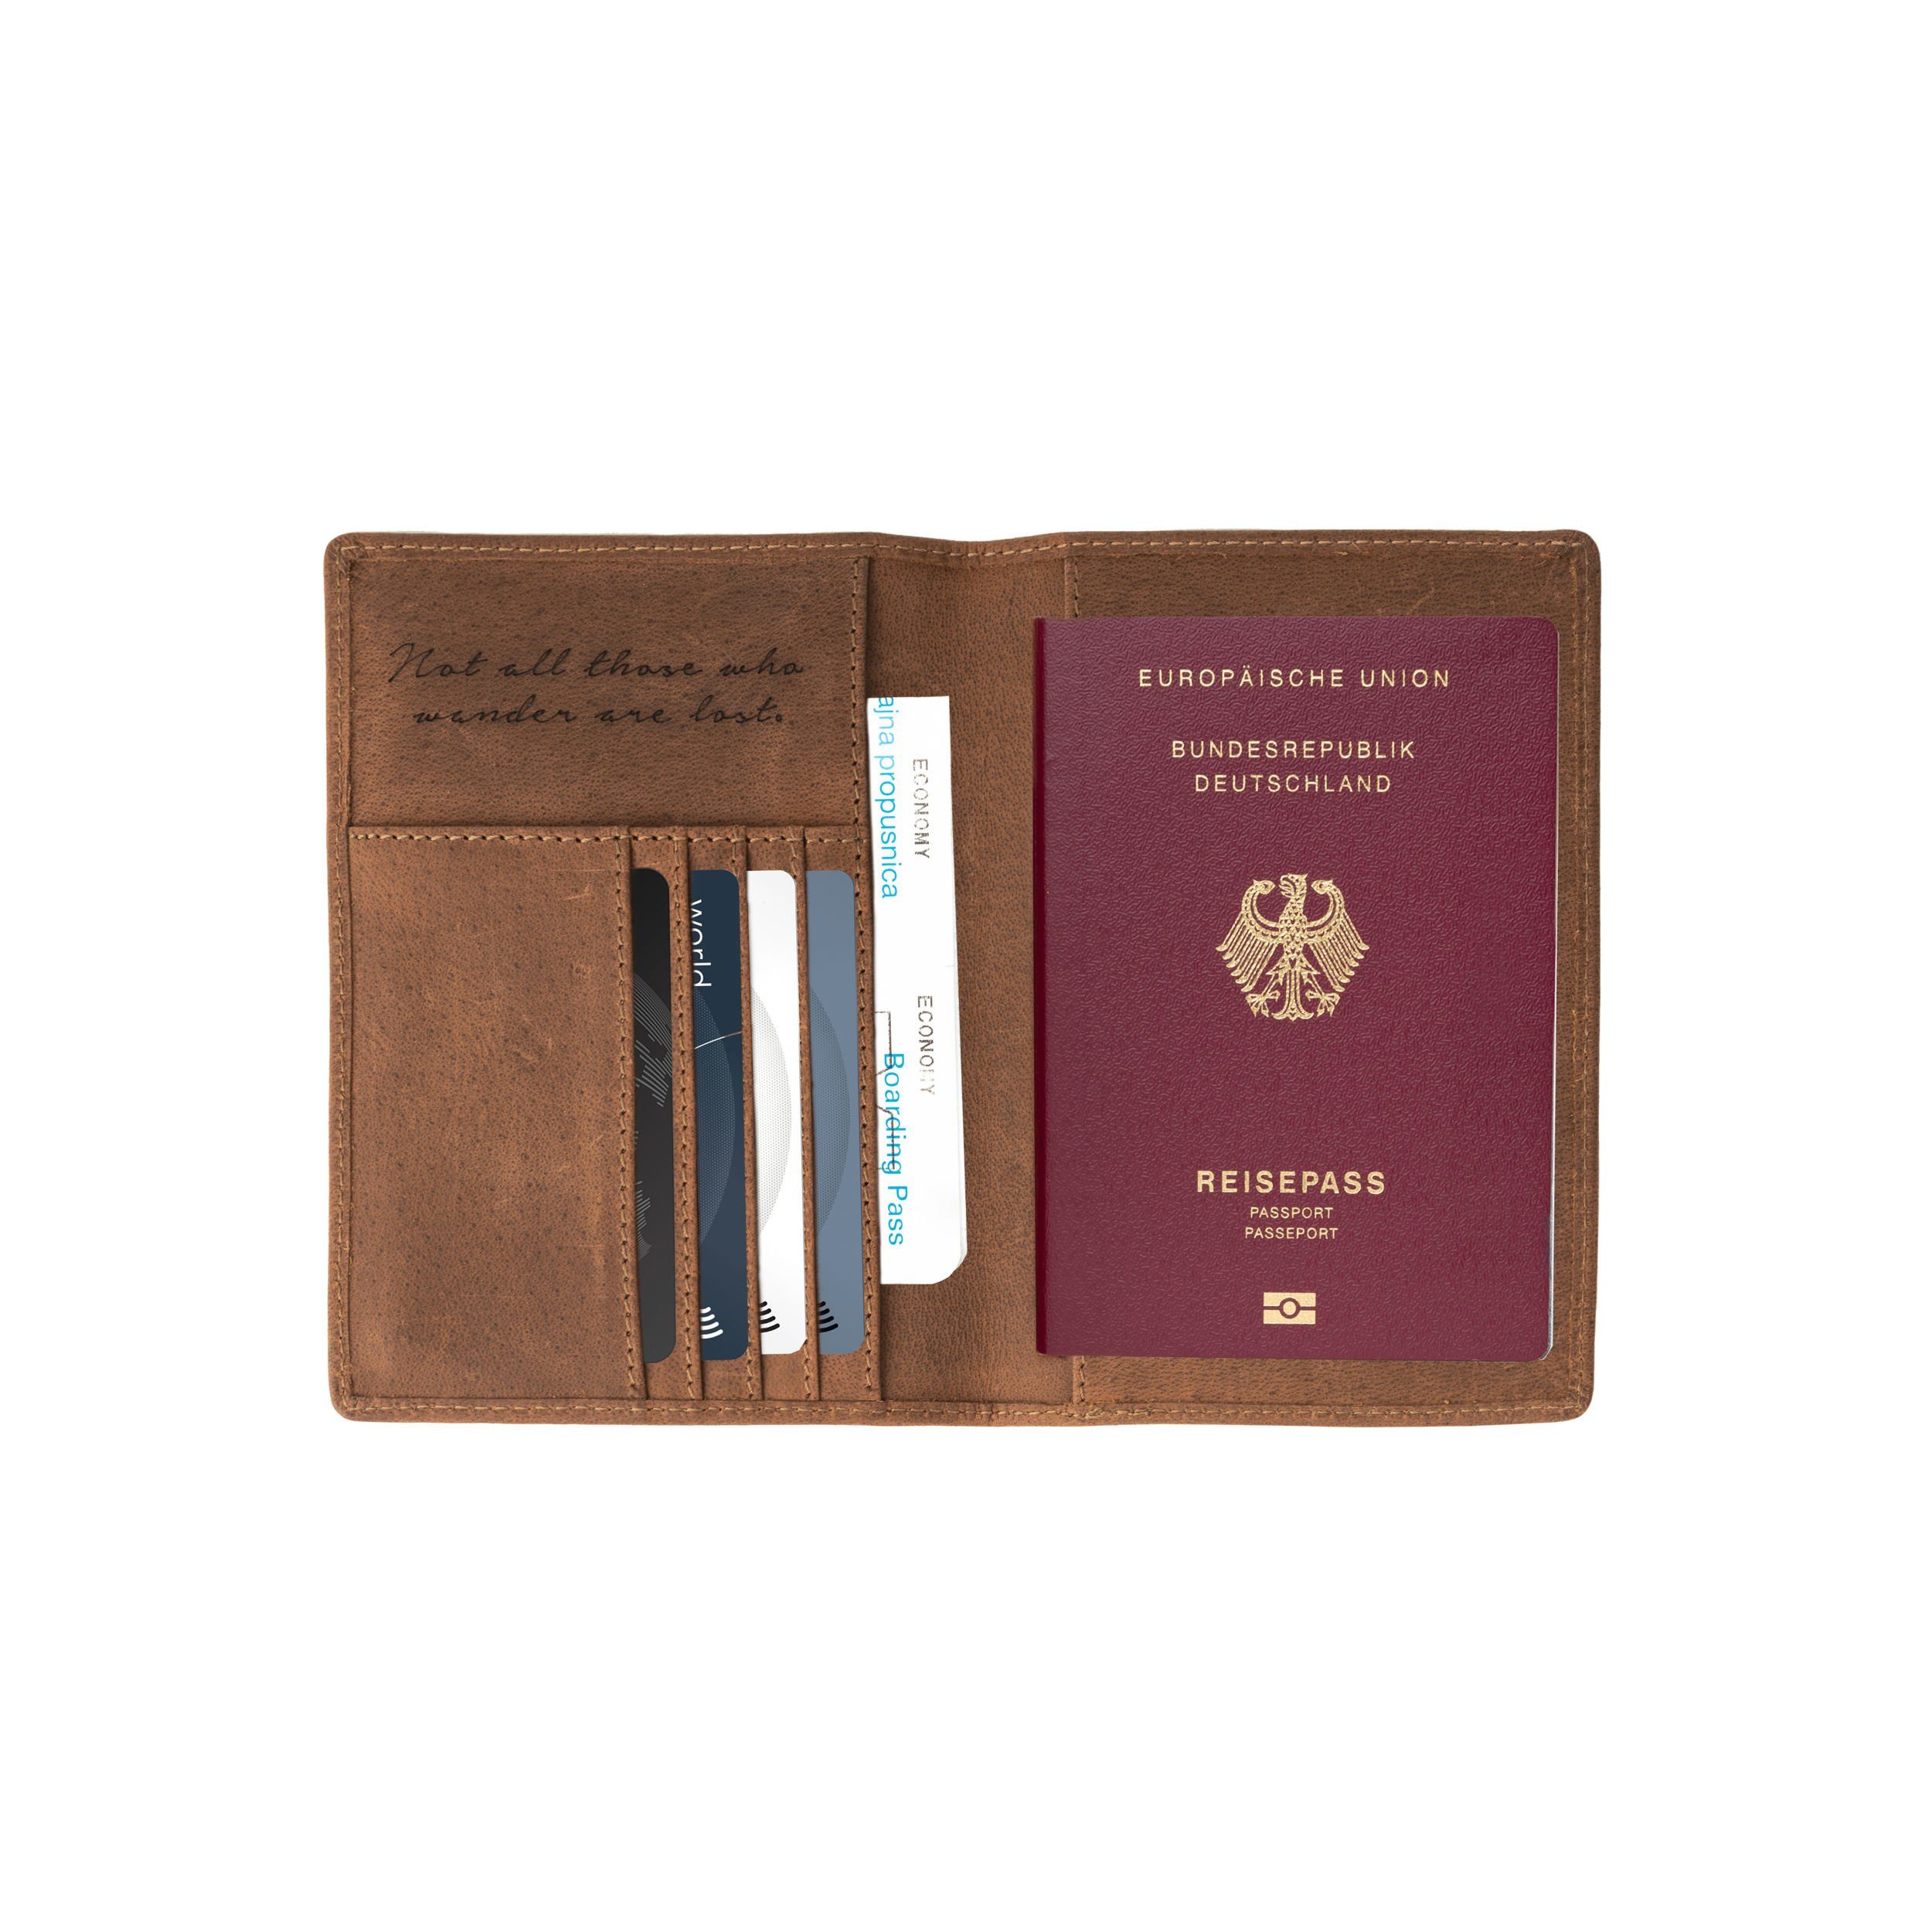 Reisezitat, Lederhülle Kartenfächern, mit Havanna-Braun, Brieftasche RFID-Schutz »Pete« DRAKENSBERG Reisepass Reisepasshülle für